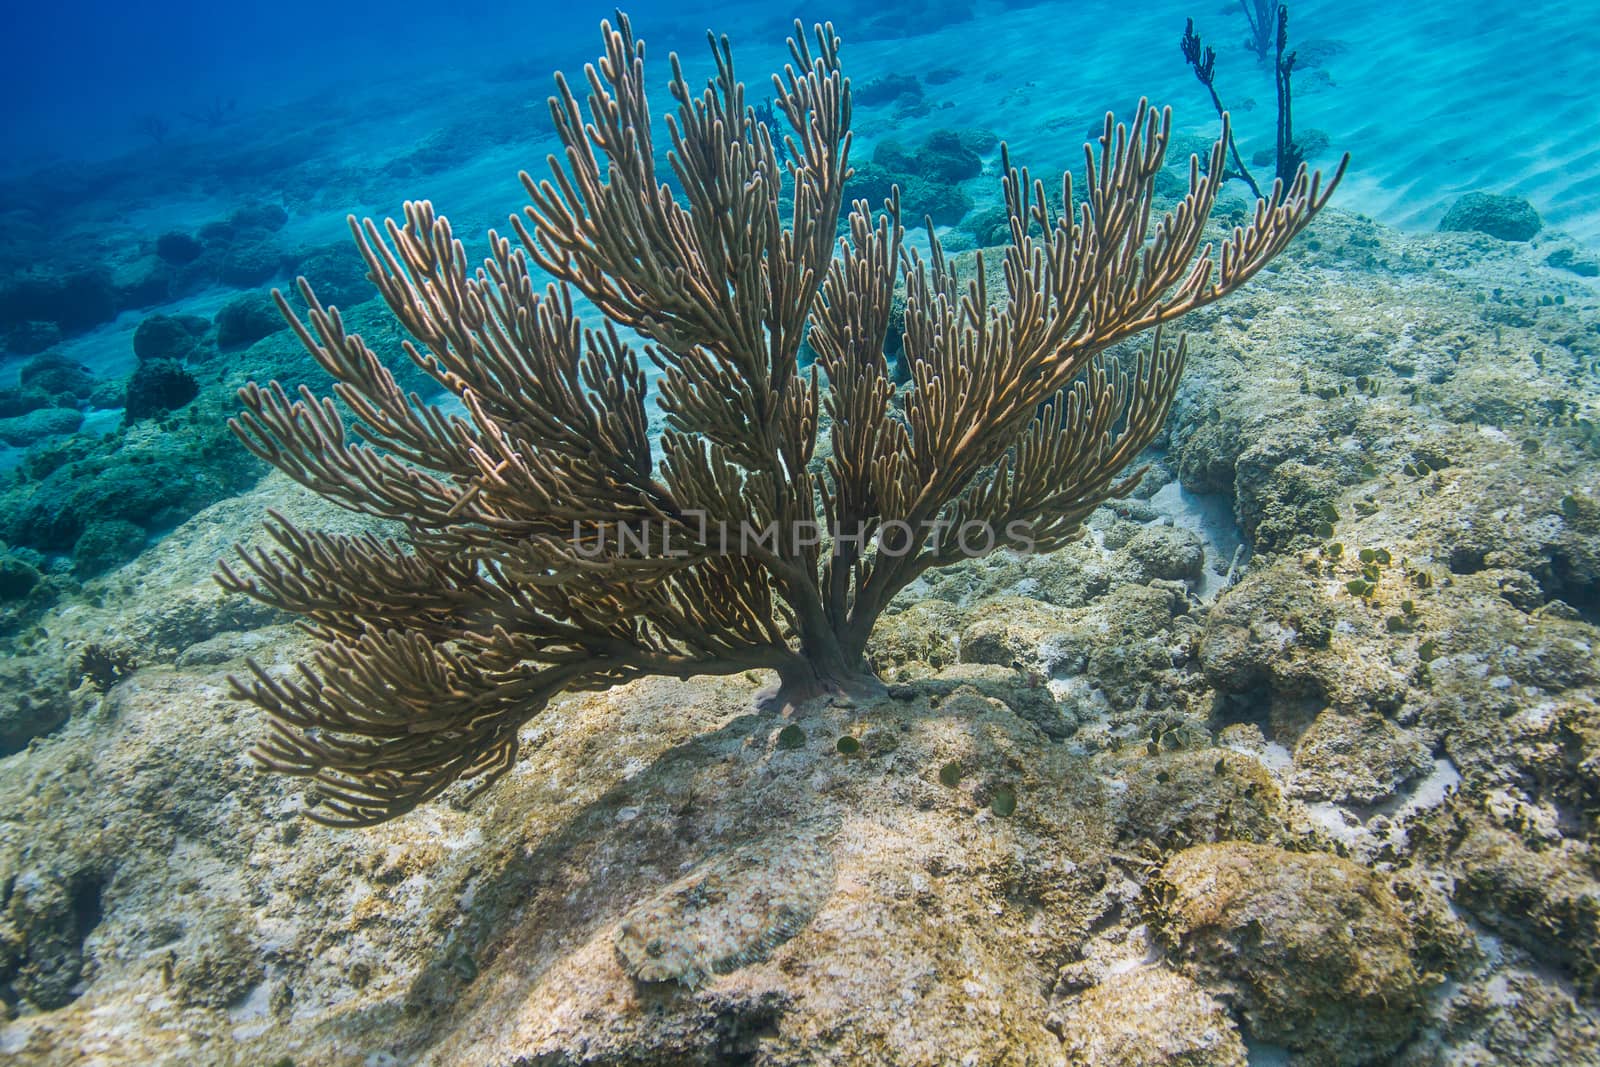 Atlantic Soft Coral by mypstudio